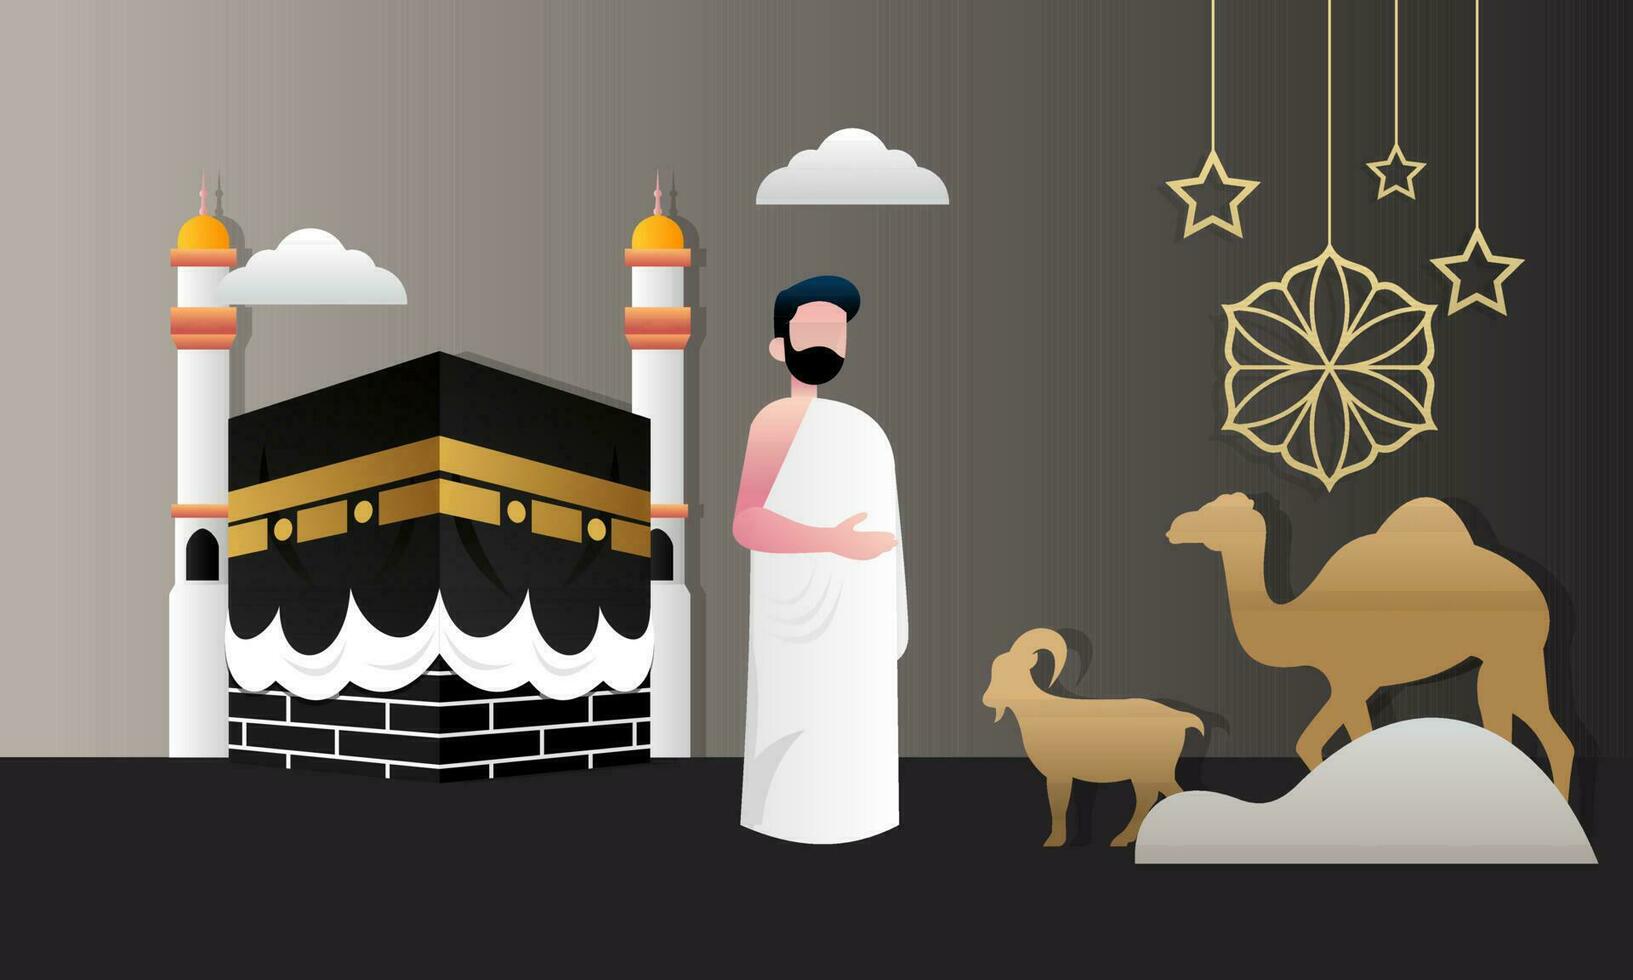 islâmico peregrinação Rezar para hajj mabroor ilustração vetor